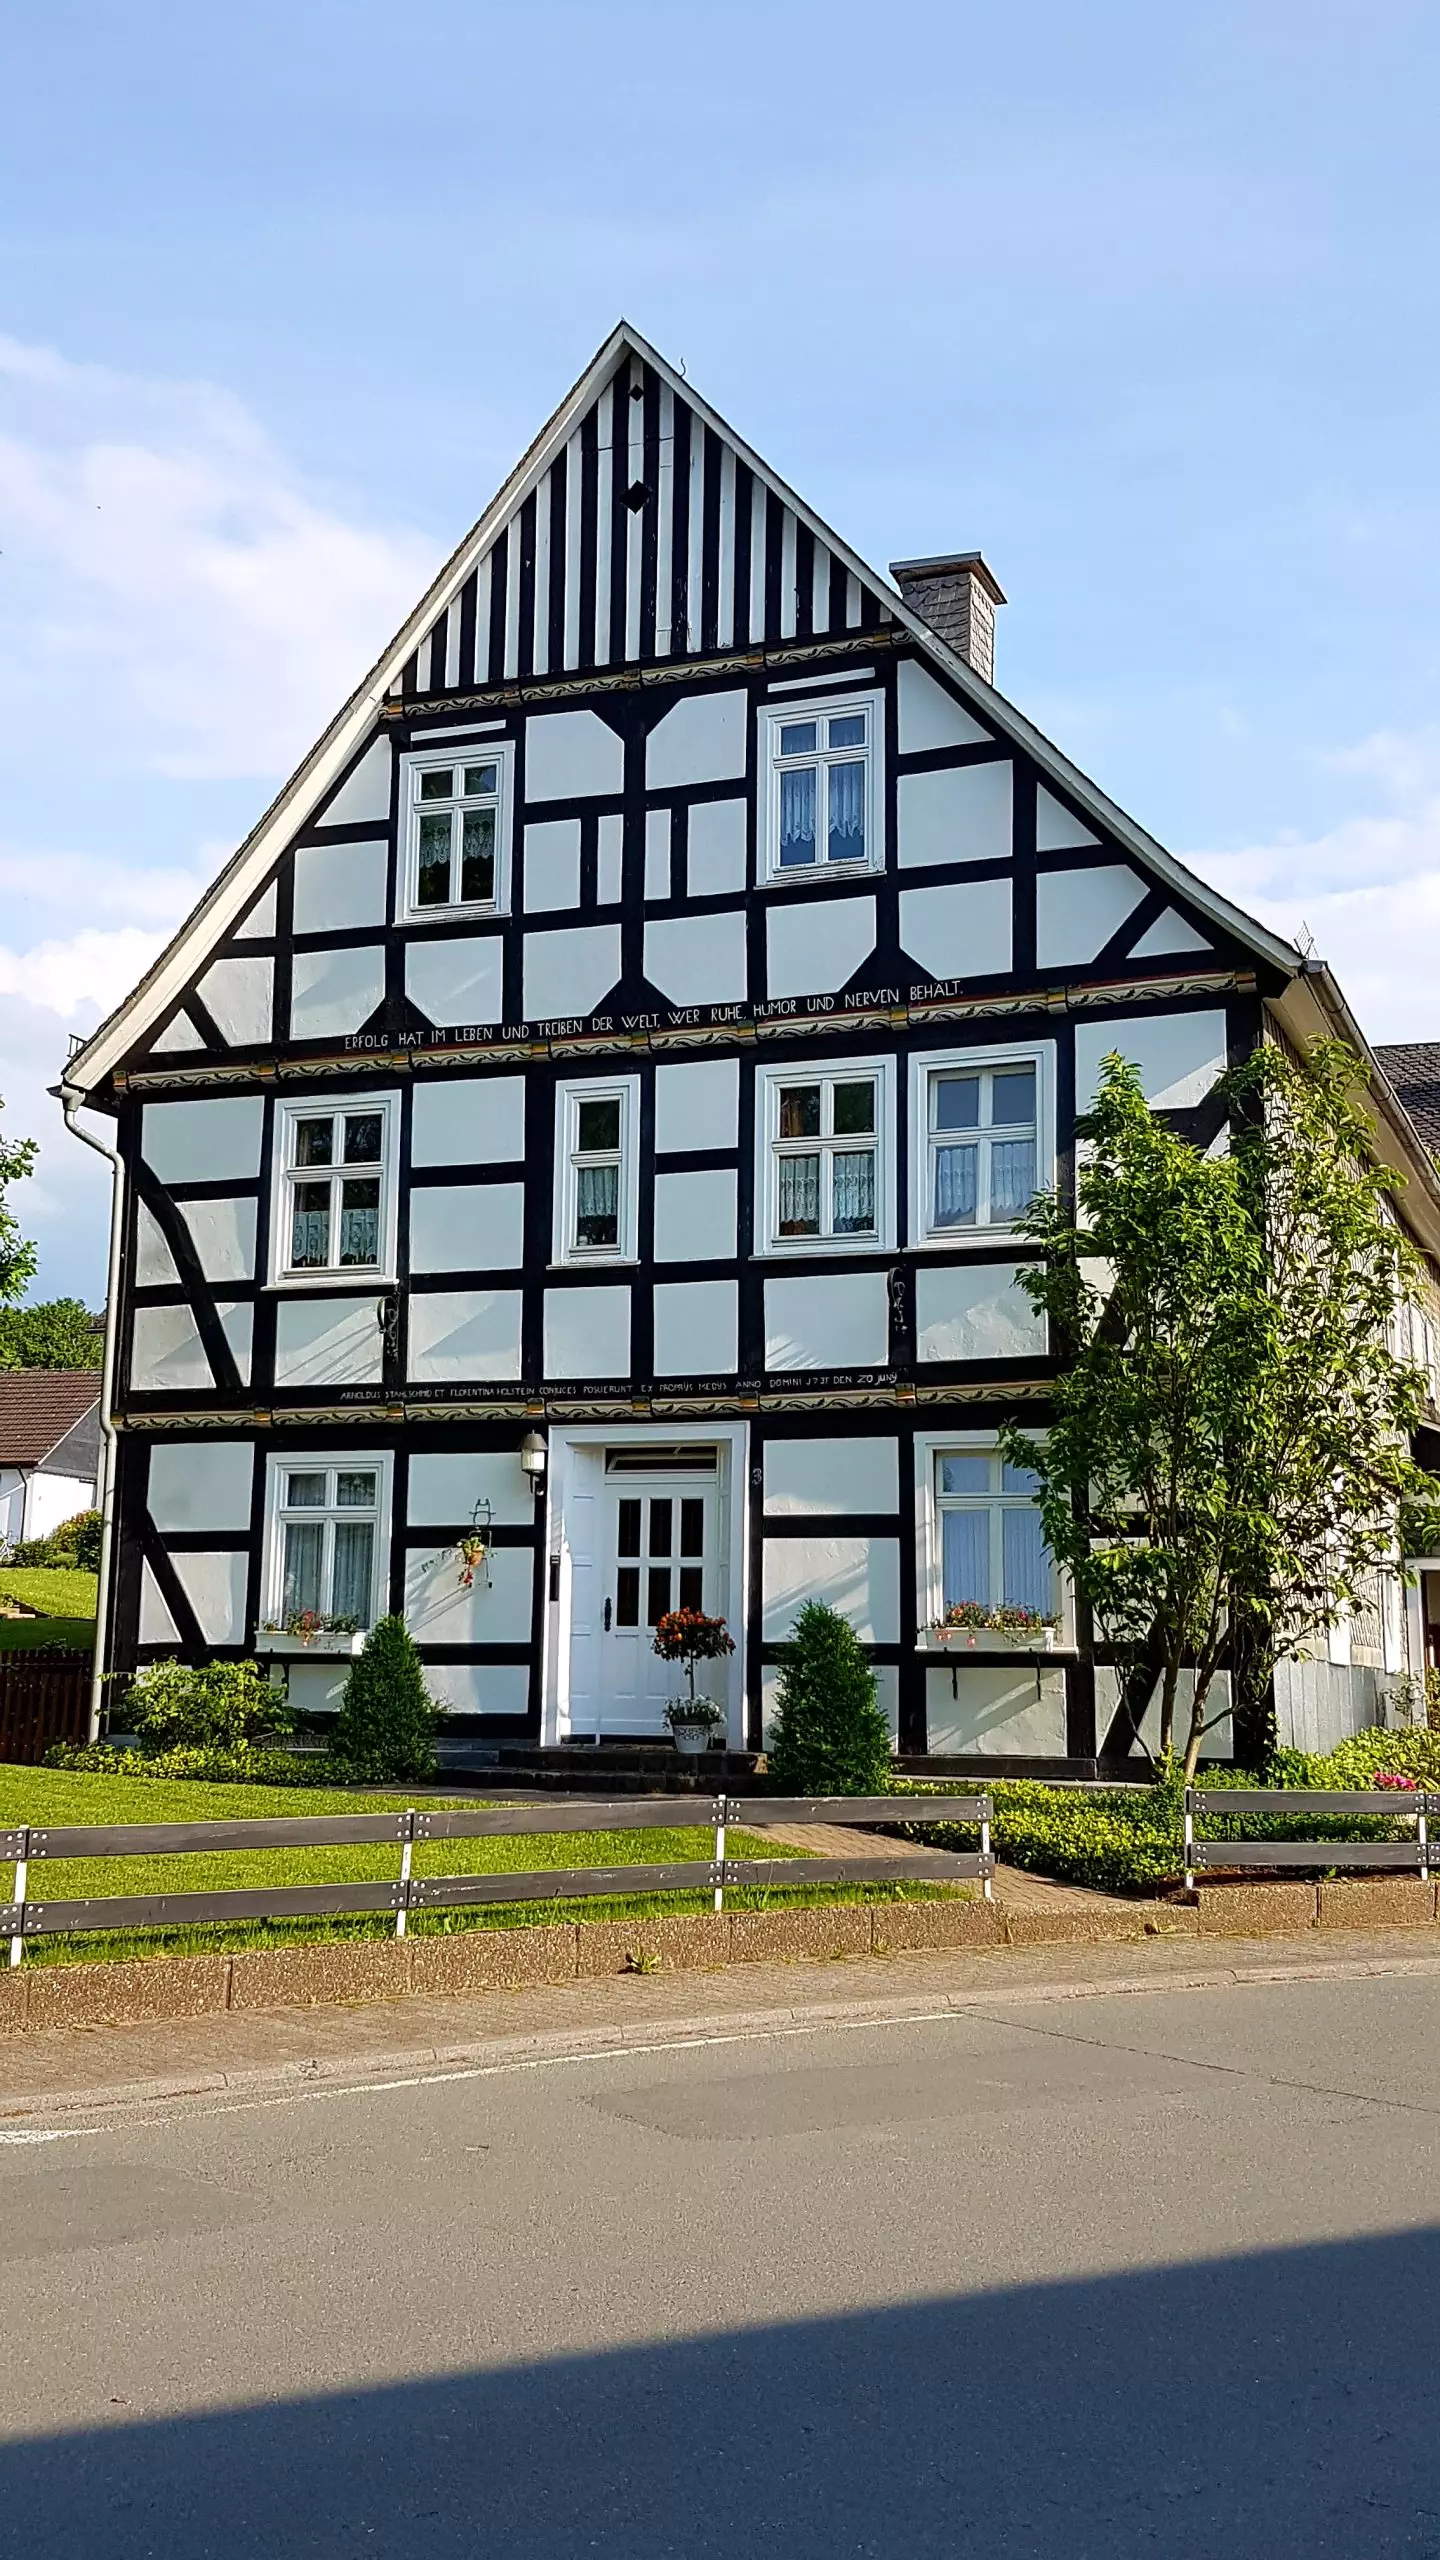 Für Helga Kleemann eines der schönsten Fachwerkhäuser. Das Haus steht in der Bruchstraße, gegenüber der Sparkassen-SB-Filiale.